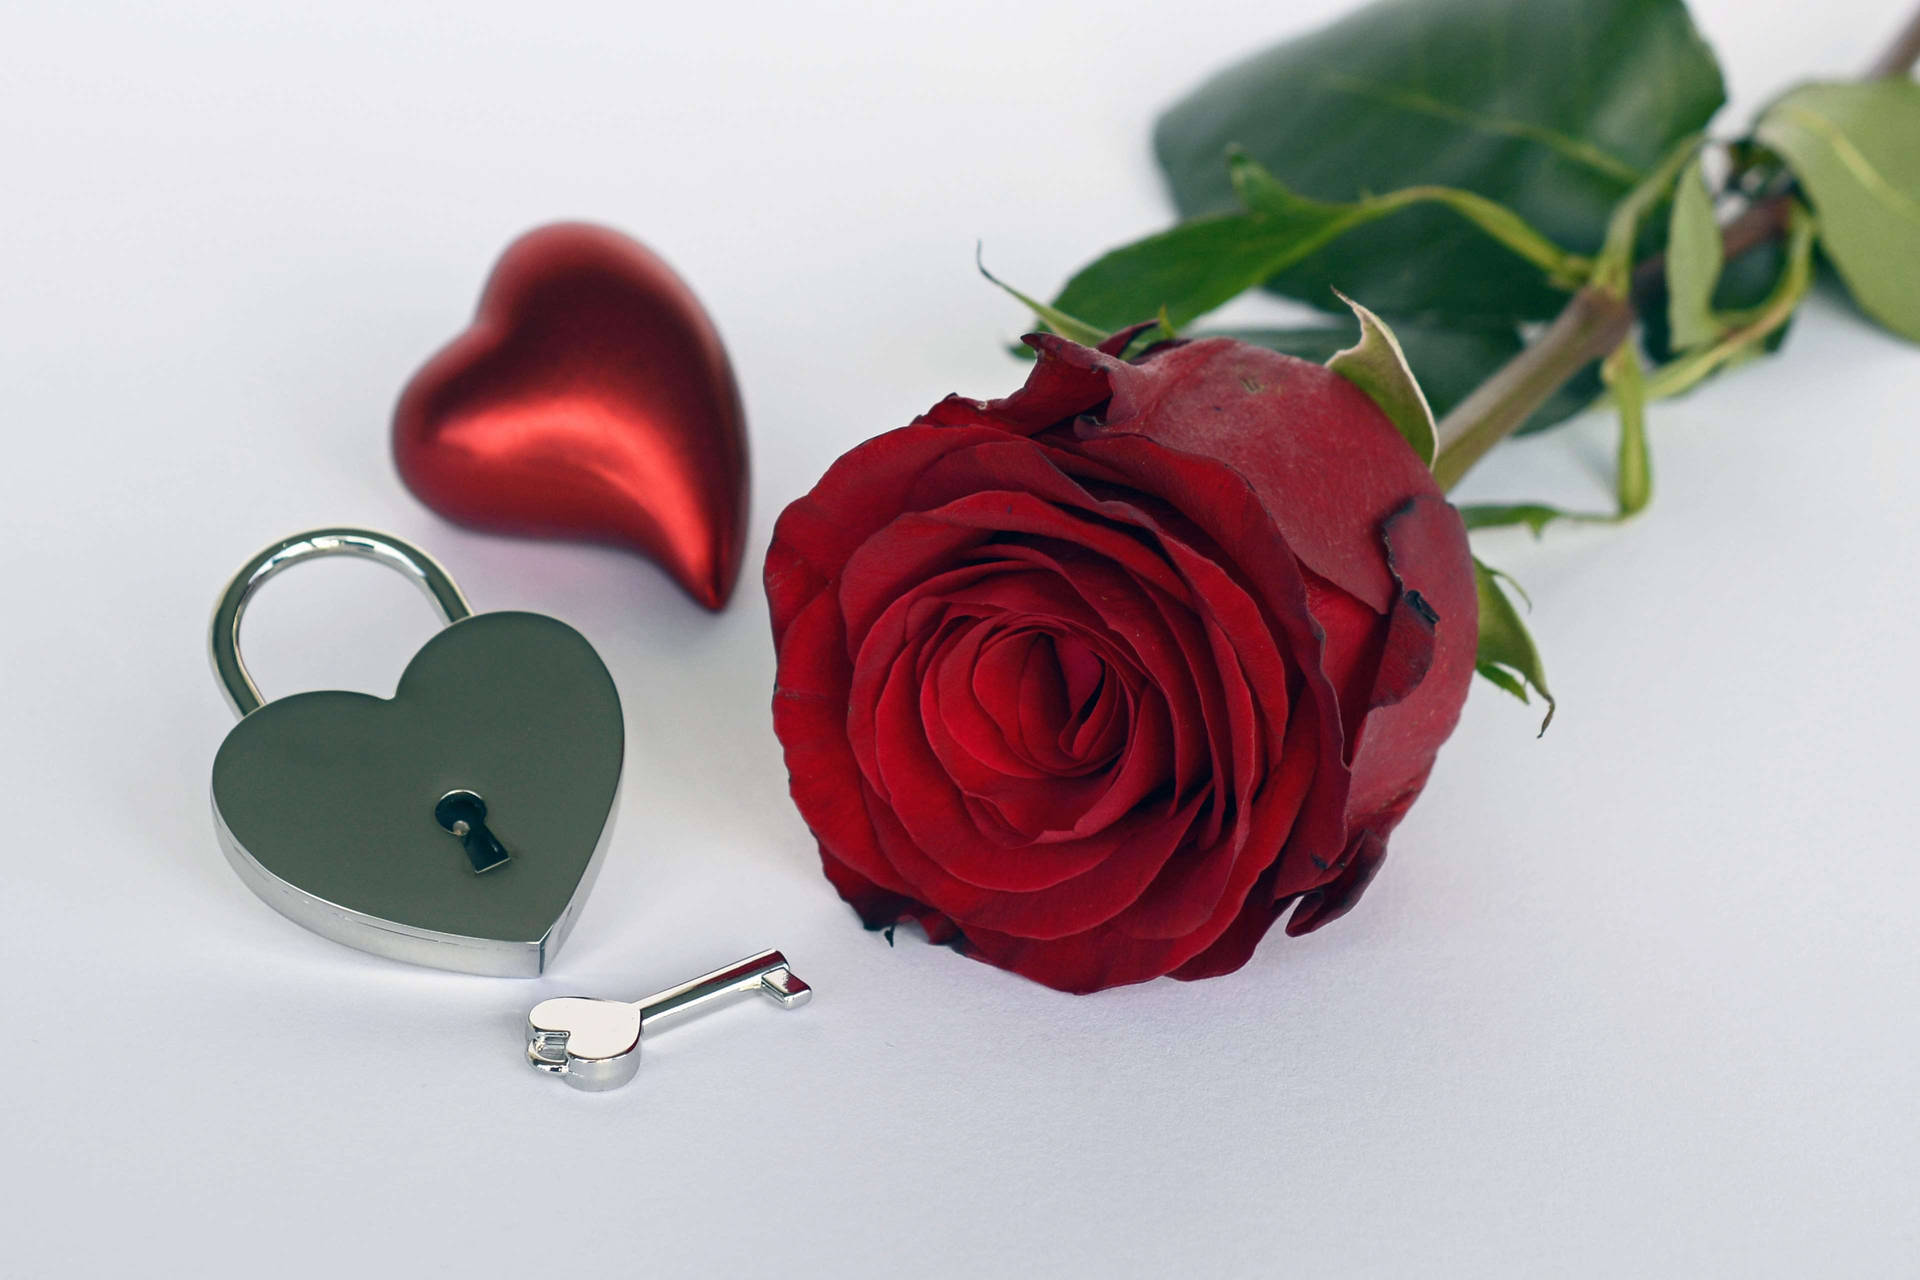 Romantisk rose og hjerteformet lås omgivet af vintage fortryllende snirkler. Wallpaper